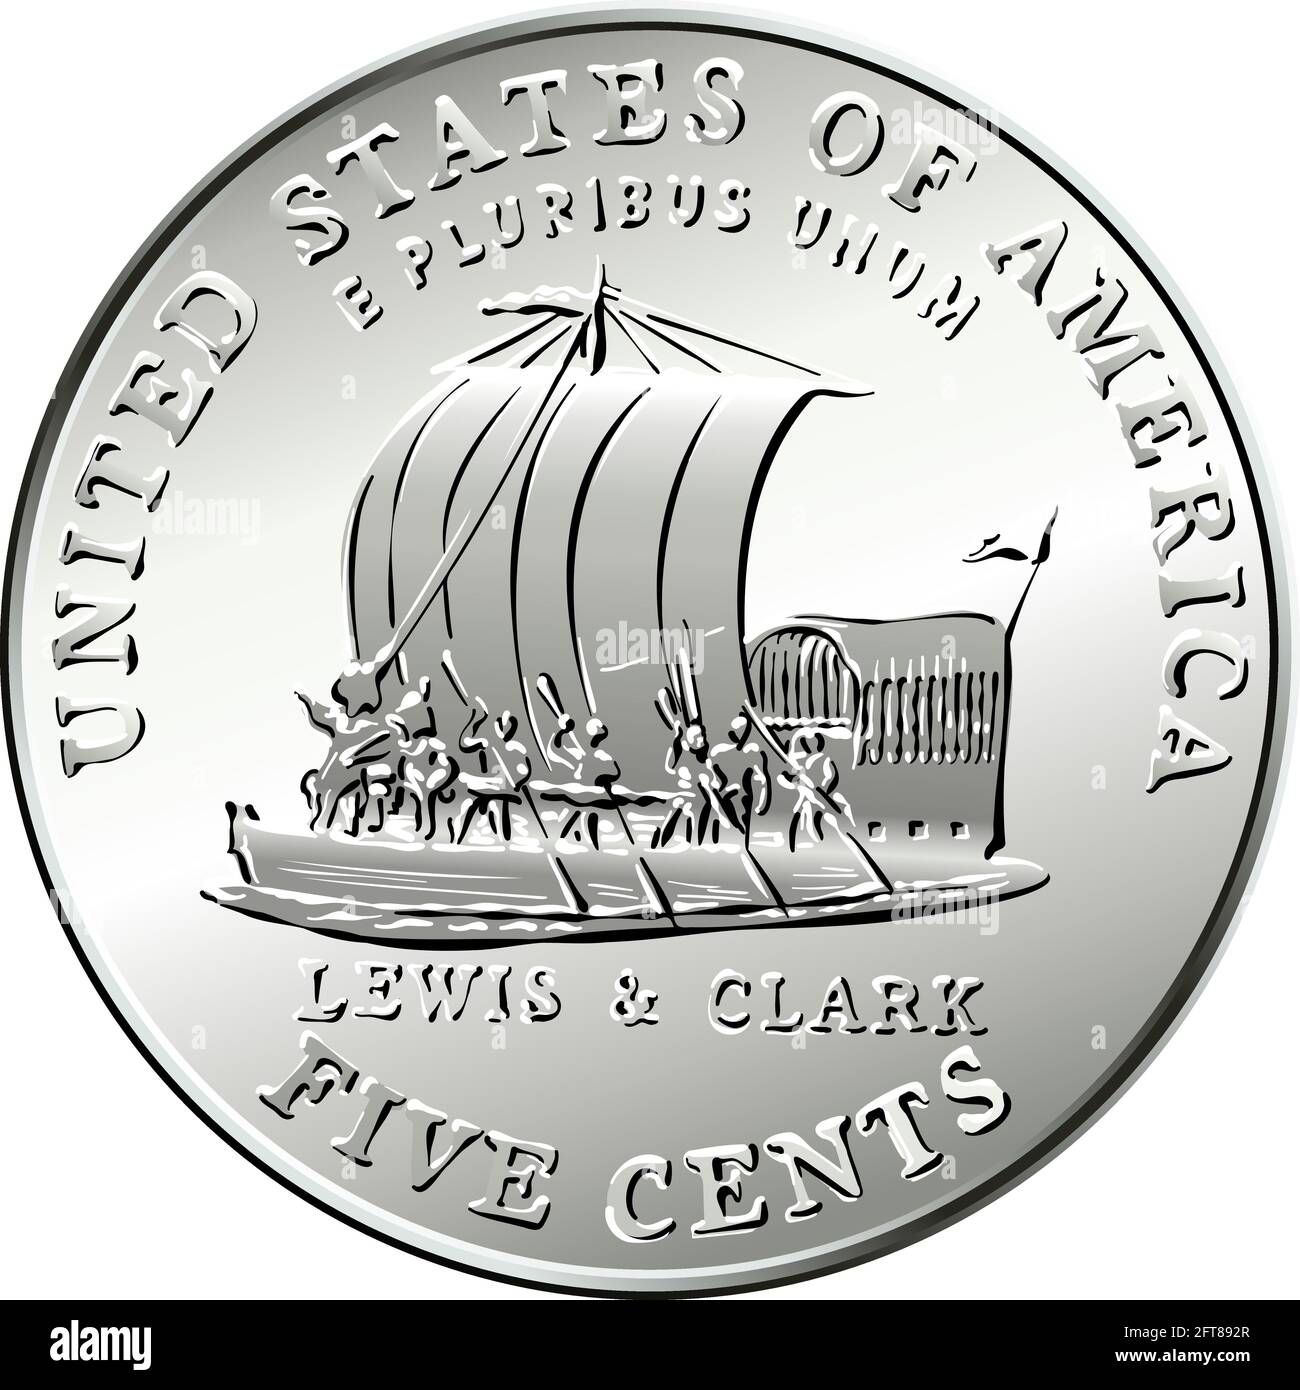 Jefferson nickel, American Money, USA pièce de cinq cents avec le bateau à quille de Lewis et Clark Expedition sur le dos en l'honneur du bicentenaire de l'expédition Illustration de Vecteur